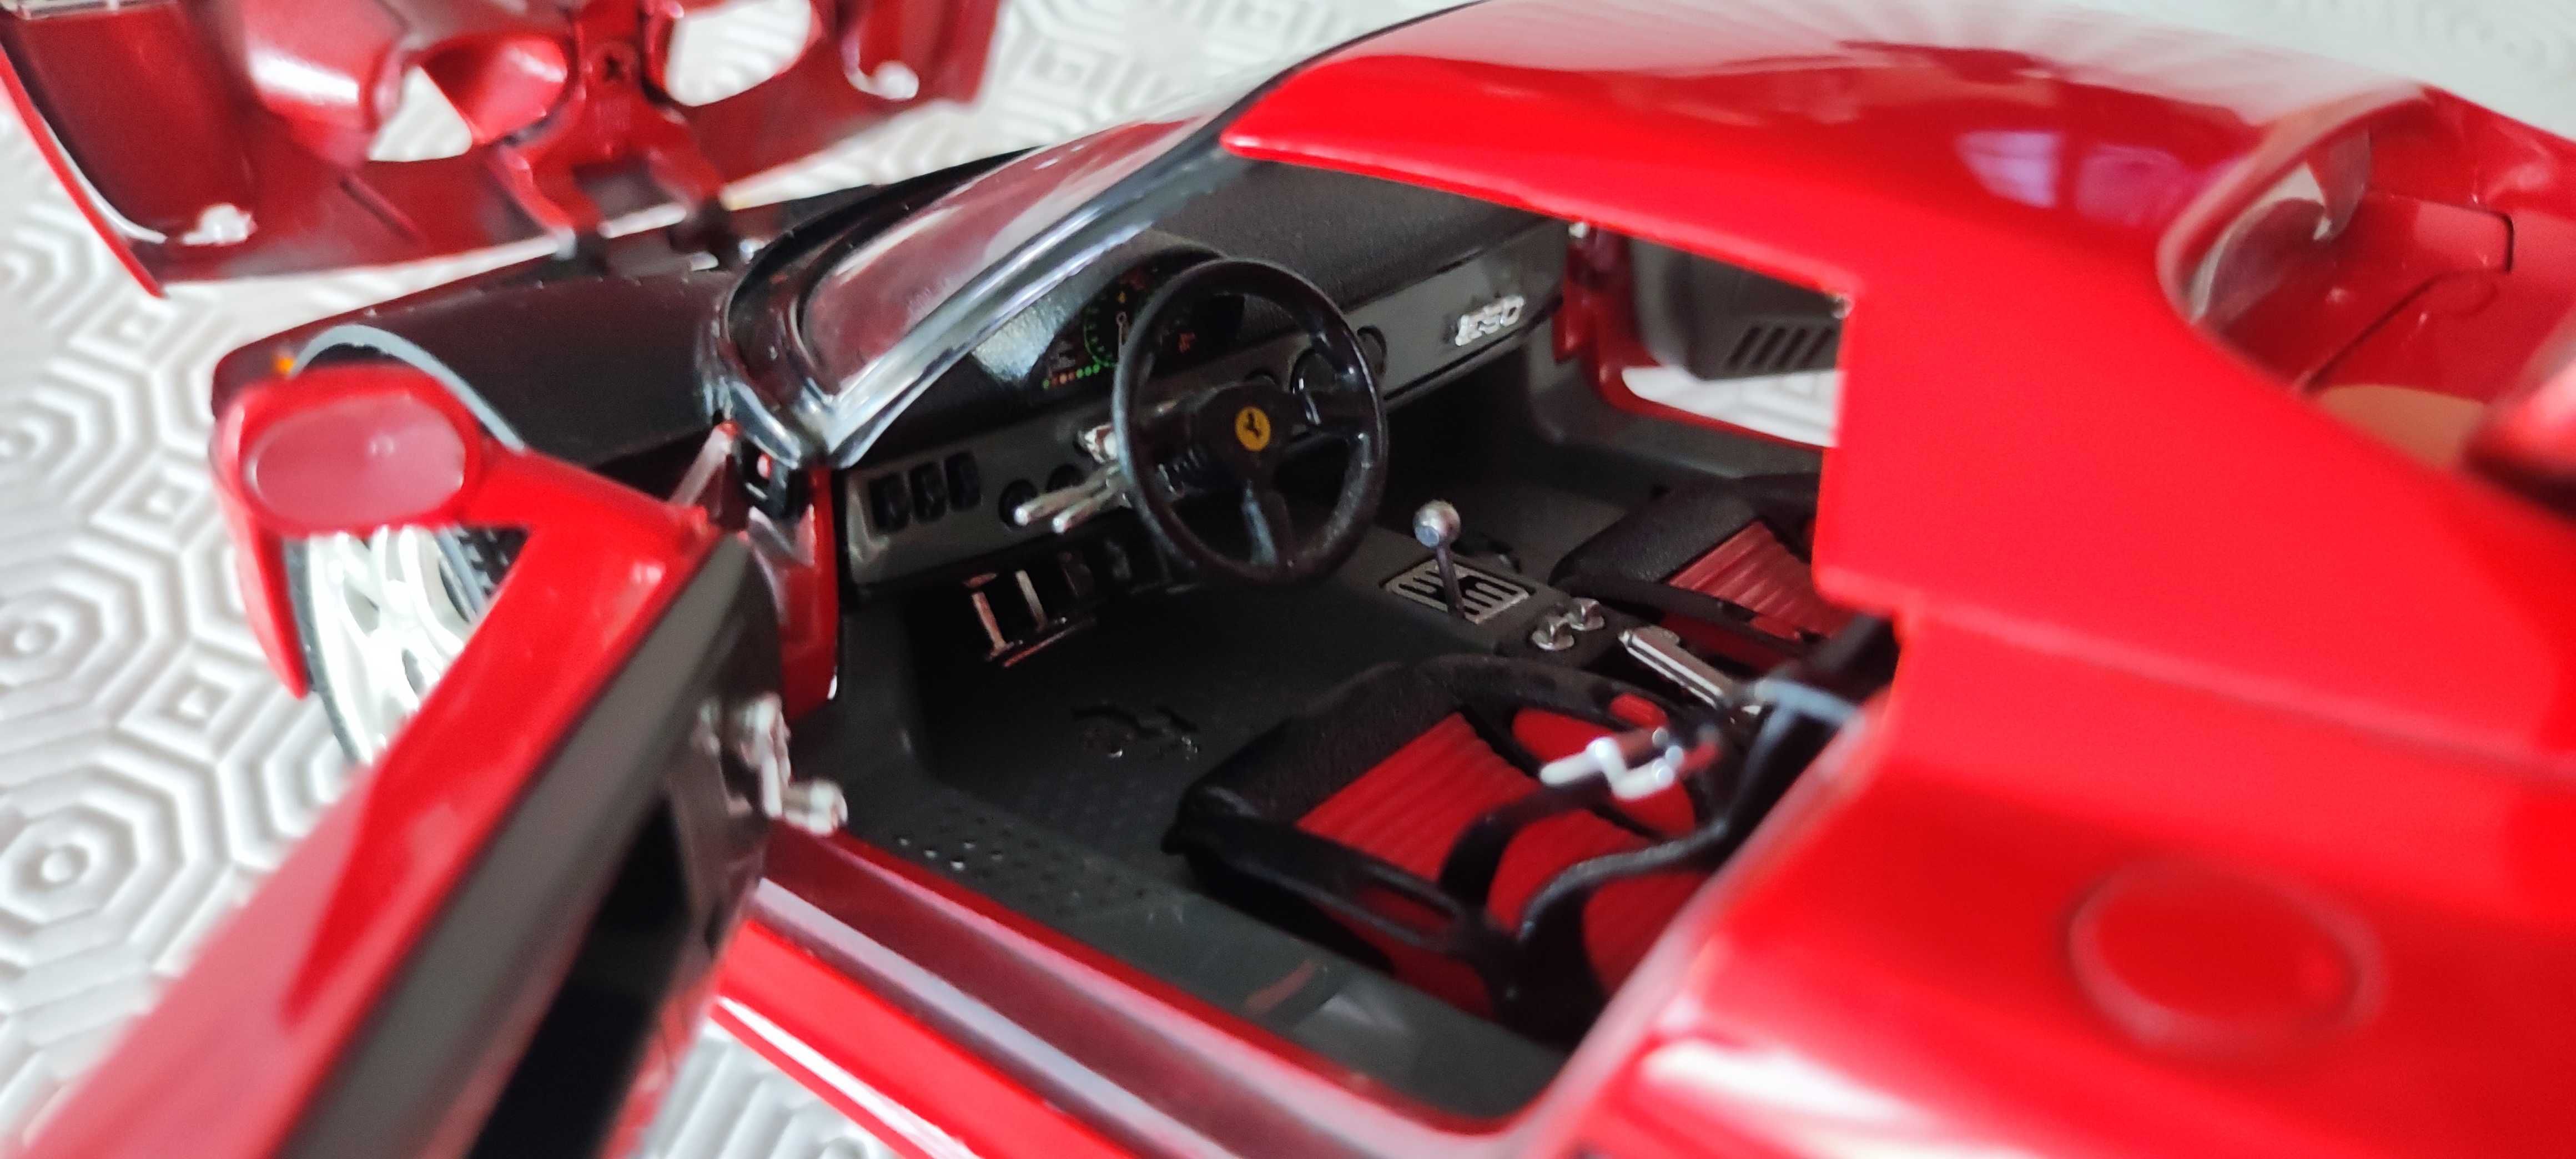 Ferrari F50 em Metal Bburago 1/18